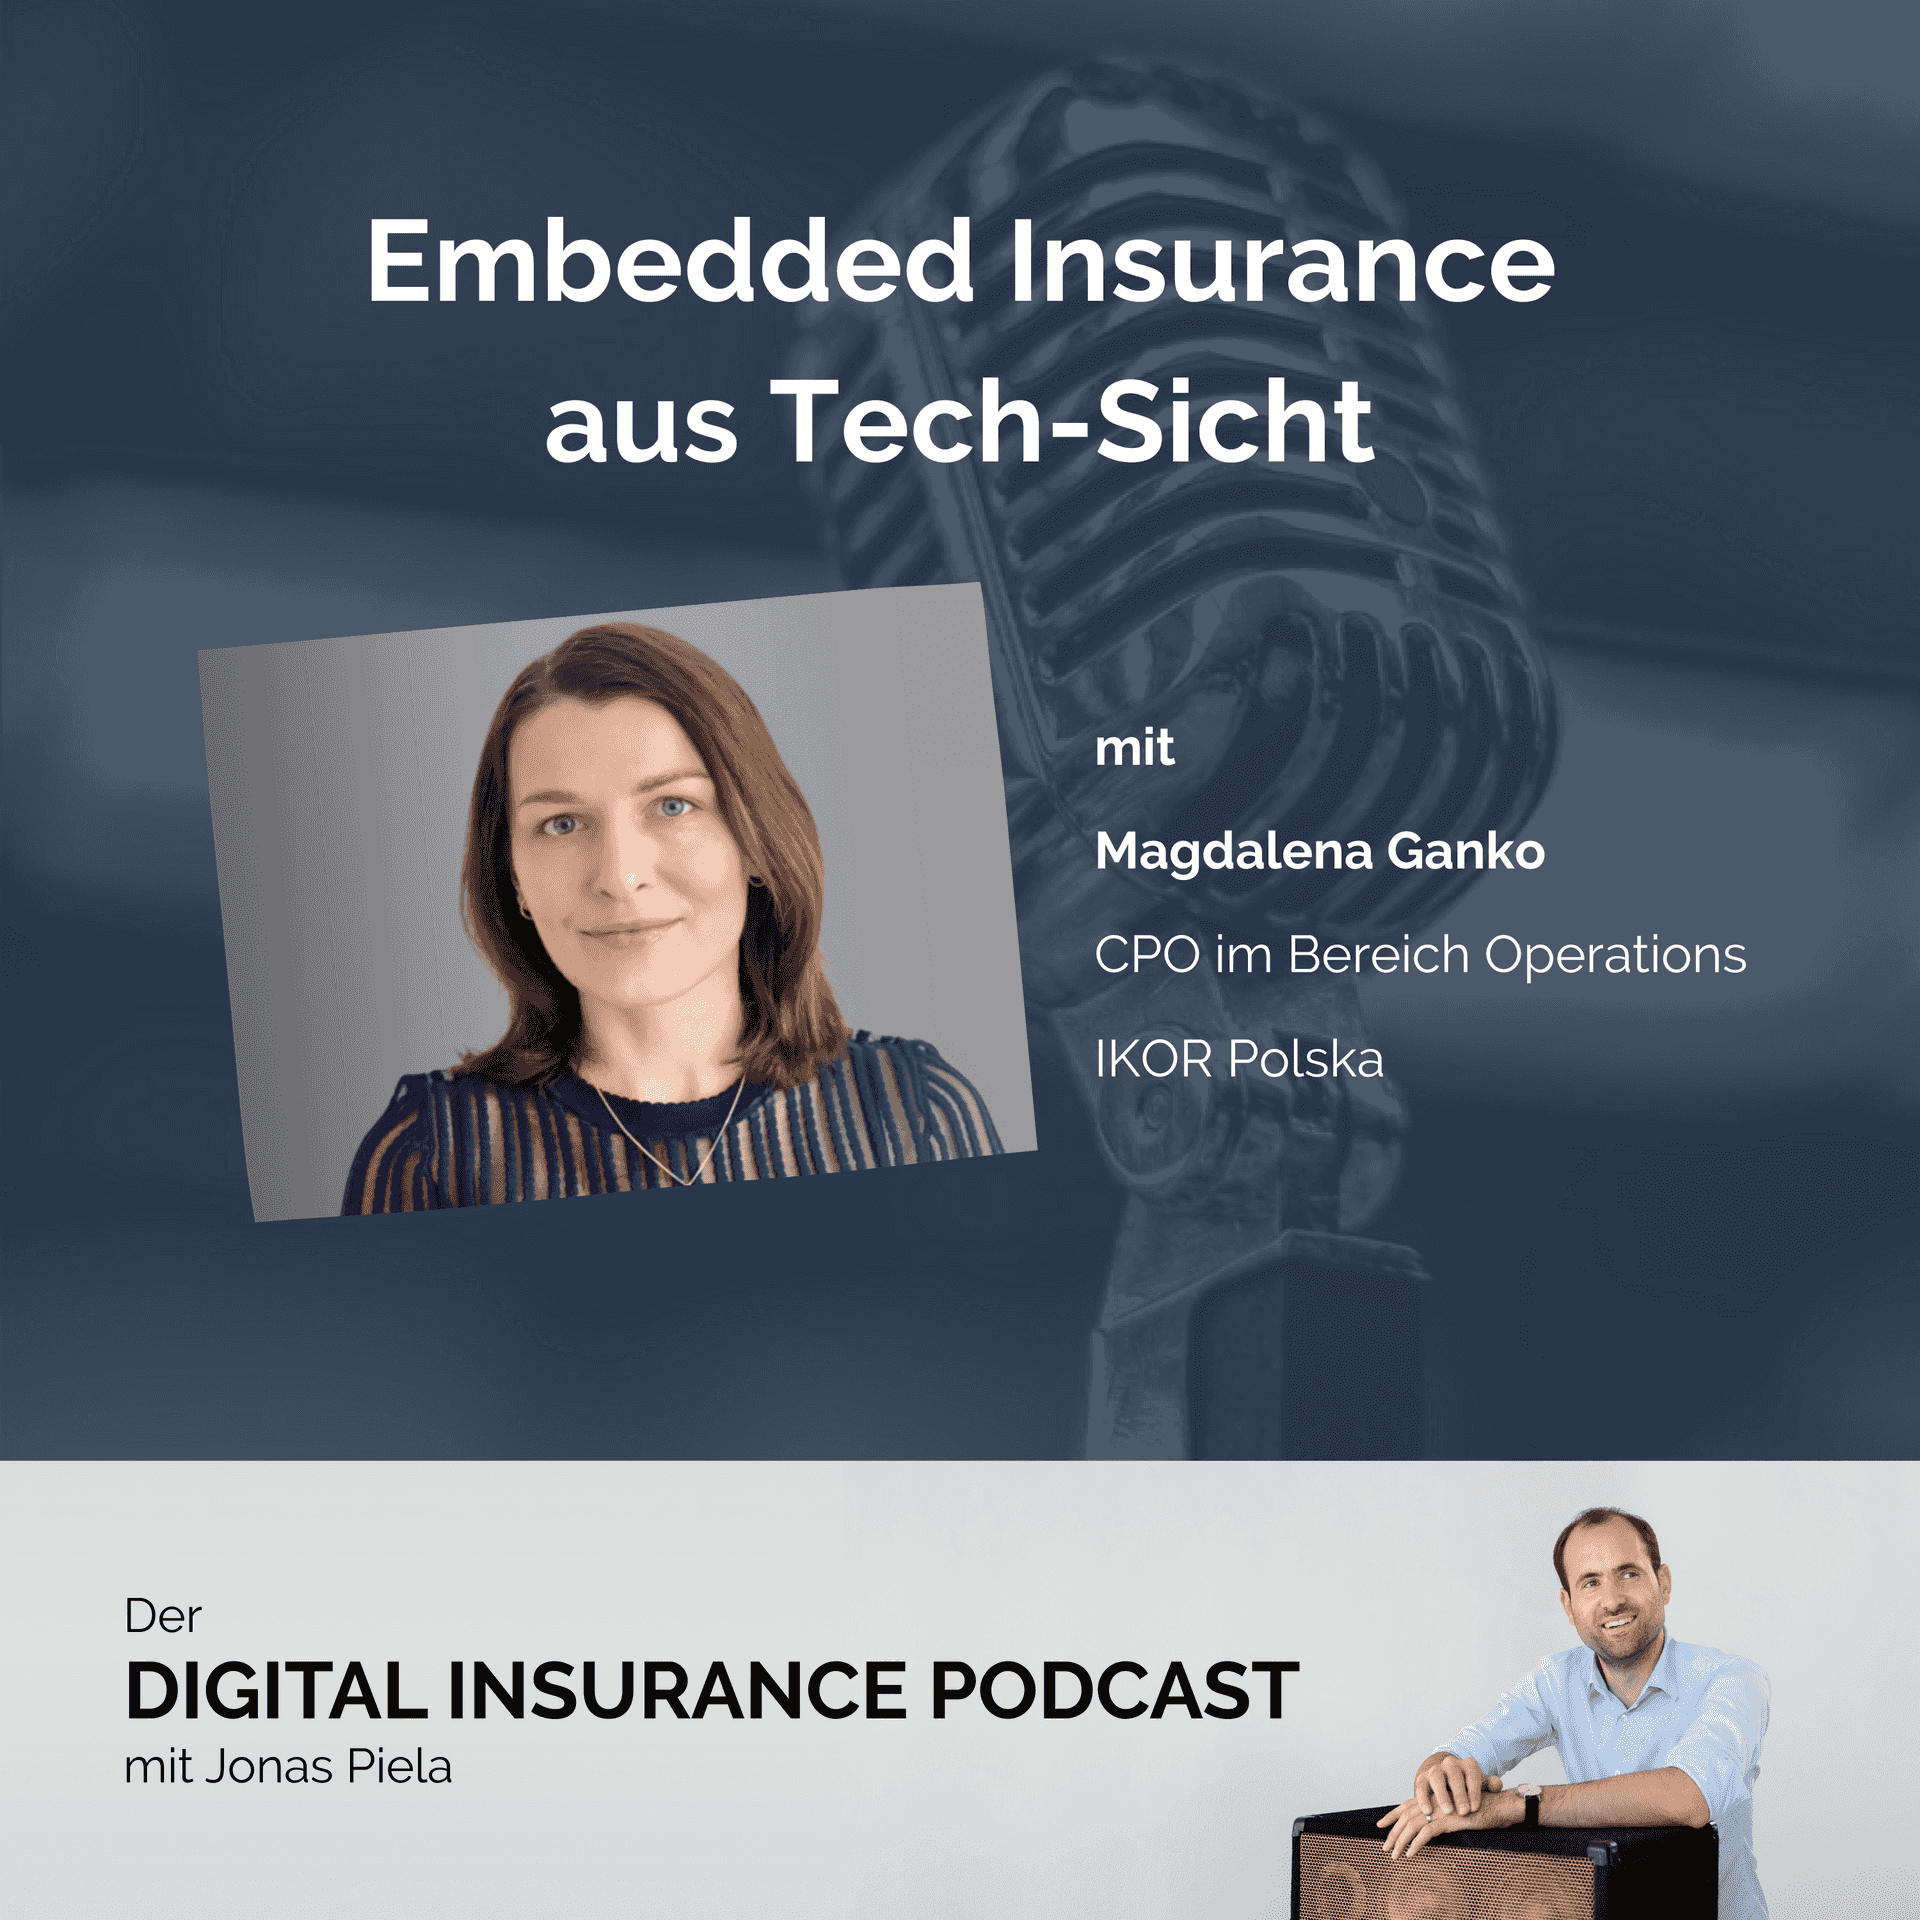 Embedded Insurance aus Tech-Sicht - mit Magdalena Ganko